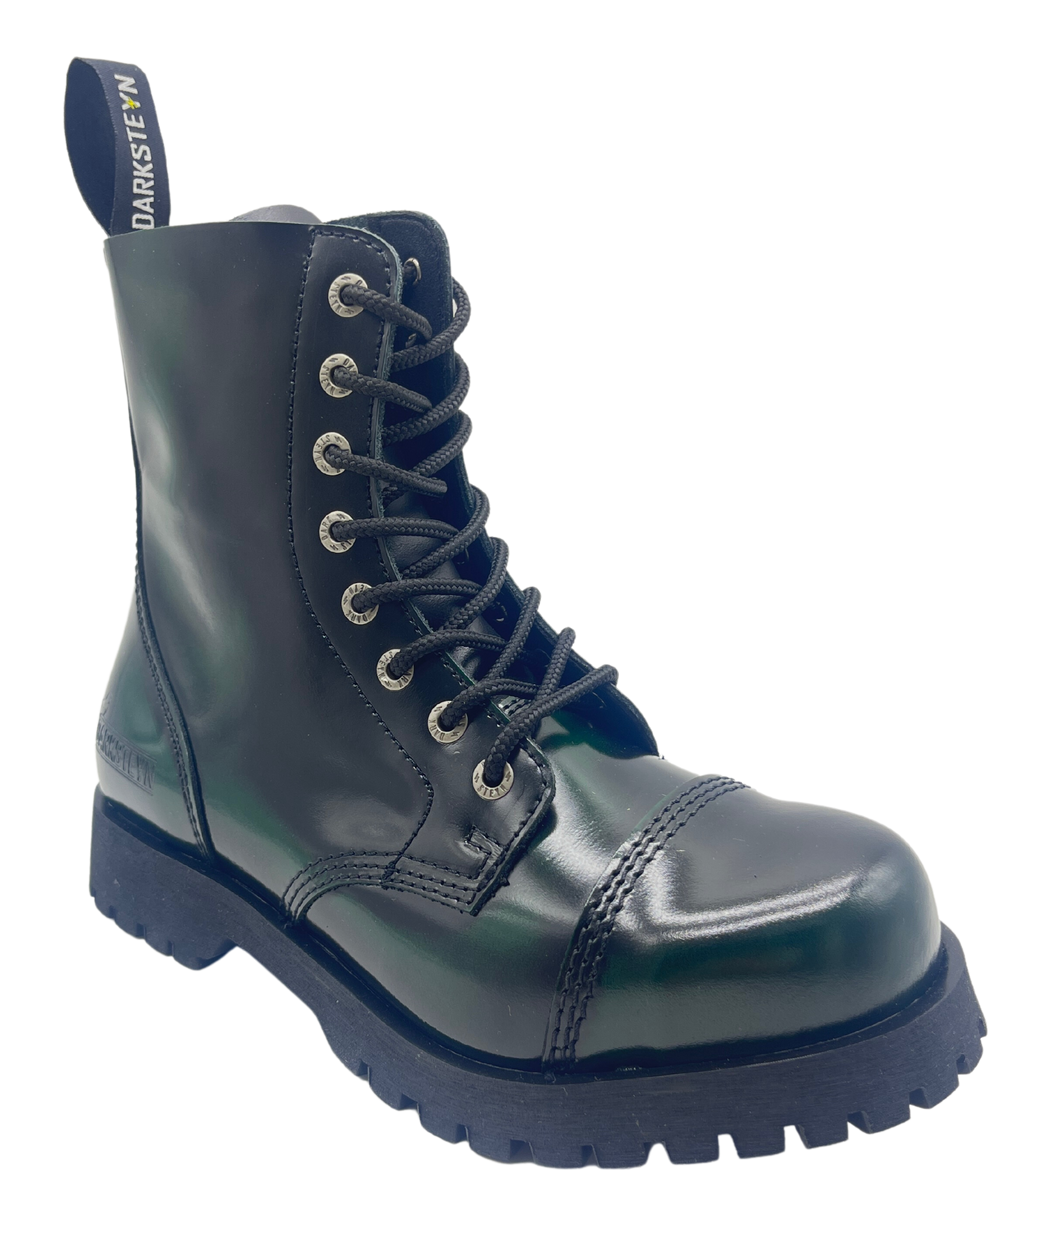 Darksteyn Stiefel Schuhe 8 Eye Ranger Premium Boots Green Grün